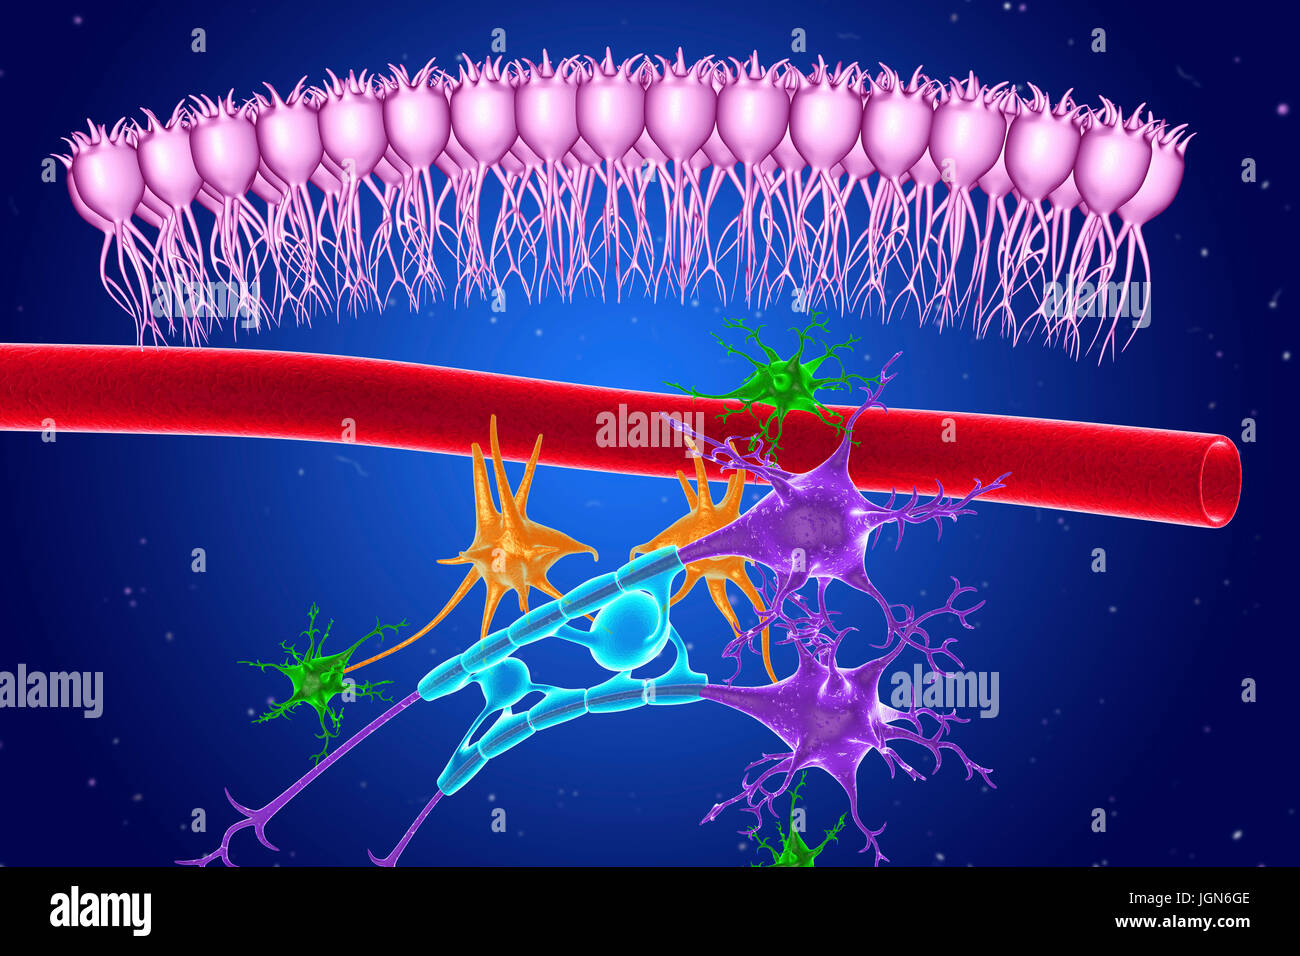 Les tissus nerveux du cerveau, de l'illustration. Vu ependymal voici les cellules (rose), un capillaire (rouge), les astrocytes (vert), les microglies (orange) et deux cellules nerveuses (violet) avec des gaines de myéline (bleu clair) sur leurs axones. Banque D'Images